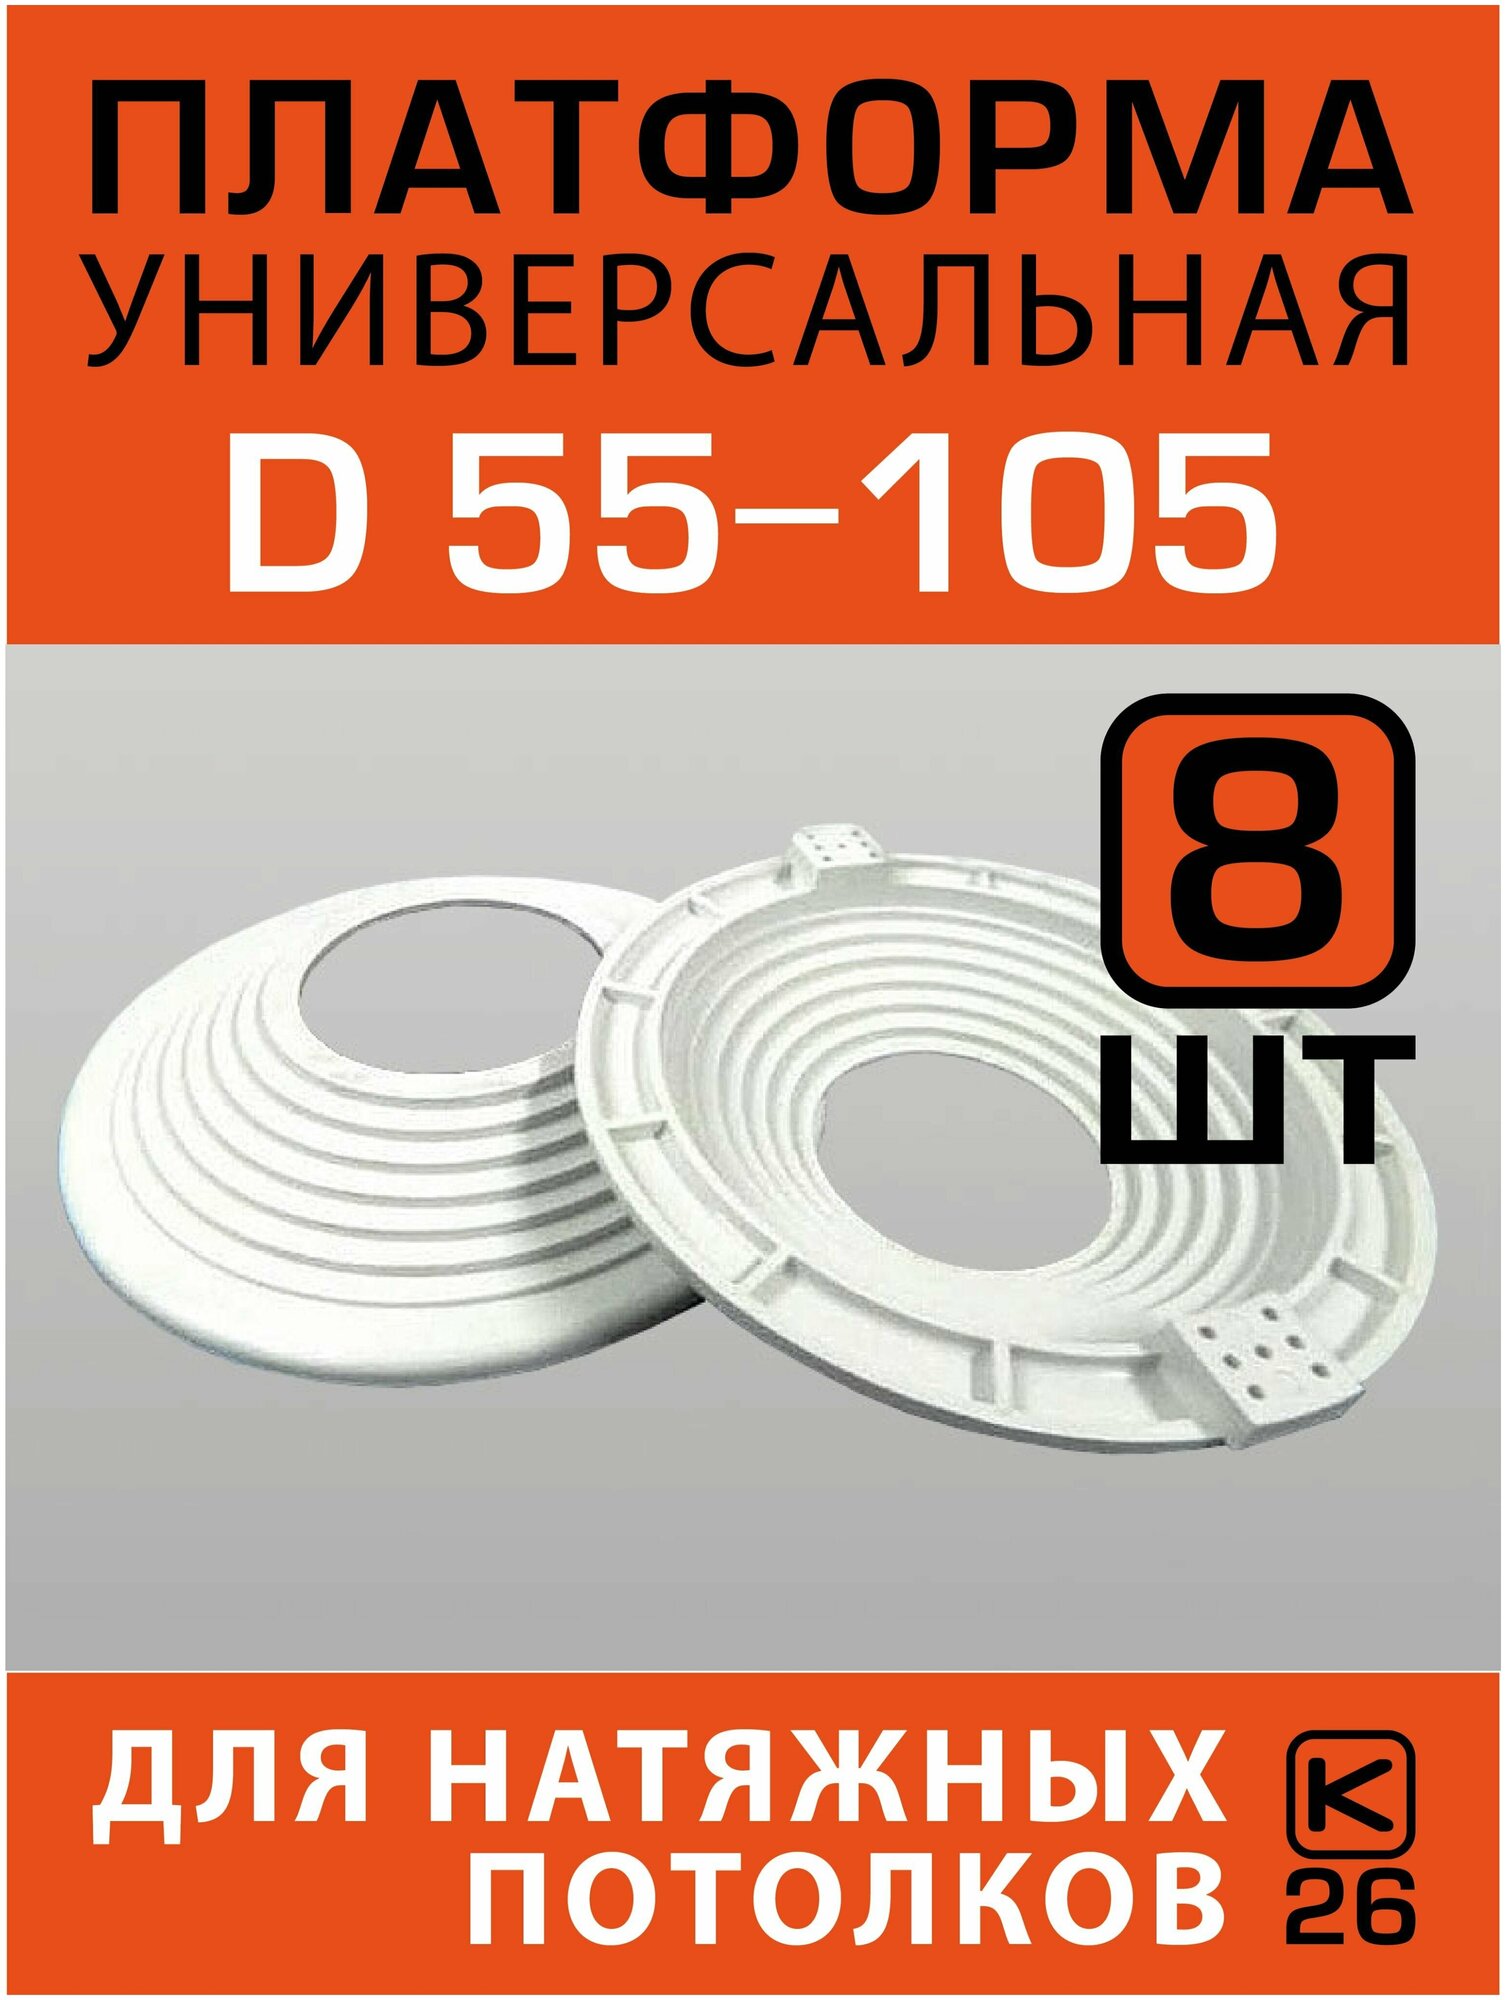 Платформа (закладная) универсальная D 55-105 для монтажа натяжных потолков (8 штук)